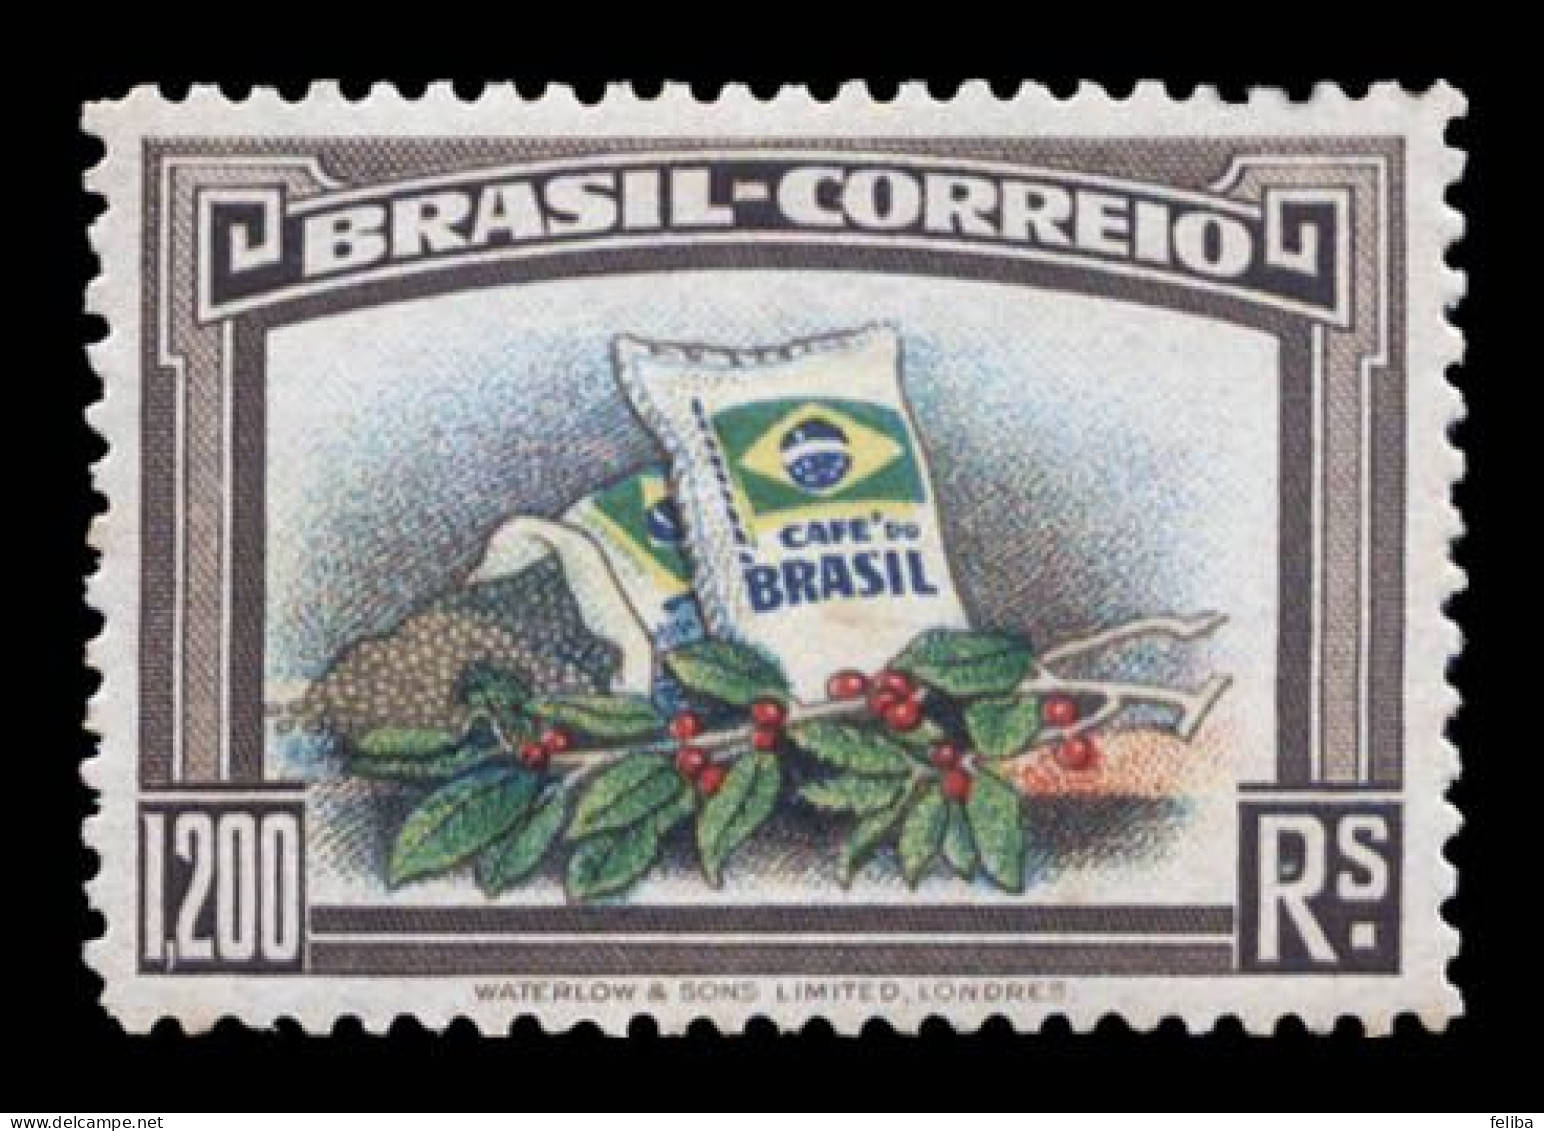 Brazil 1938 Unused - Nuovi